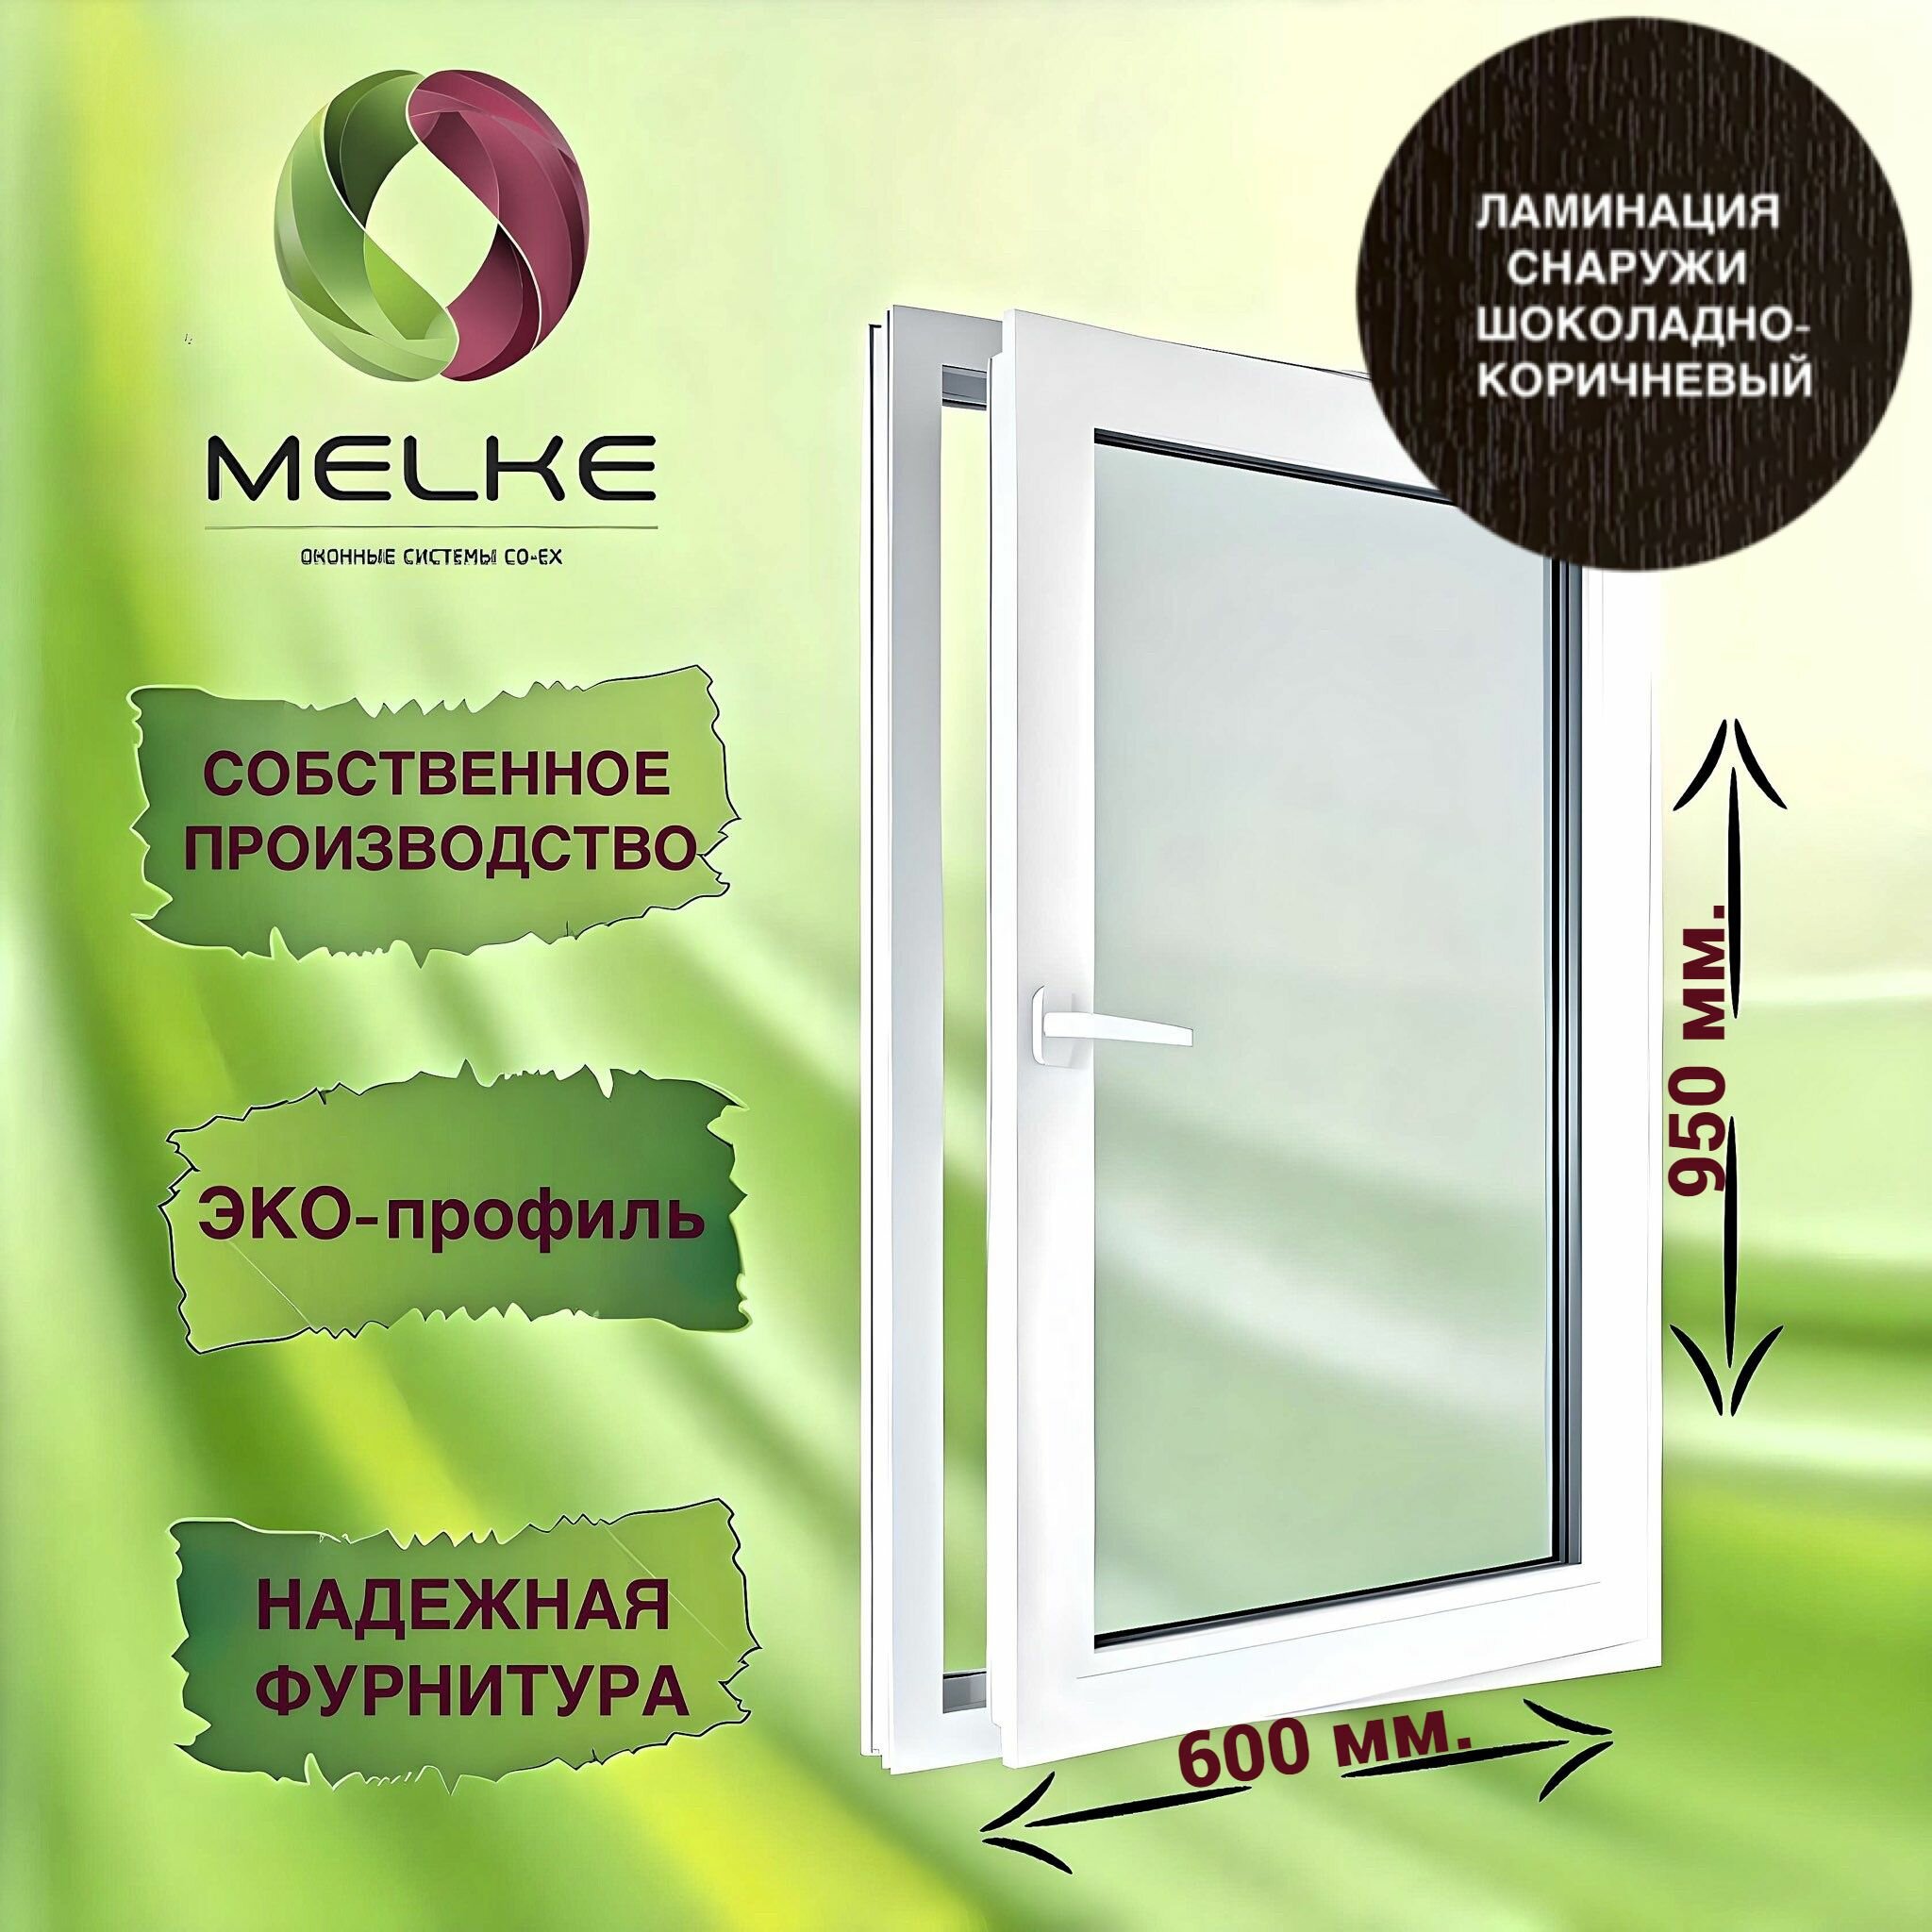 Окно 950 х 600 мм, Melke 60 (Фурнитура FUTURUSS), правое одностворчатое, поворотно-откидное, цвет внешней ламинации Шоколадно-коричневый, 2-х камерный стеклопакет, 3 стекла